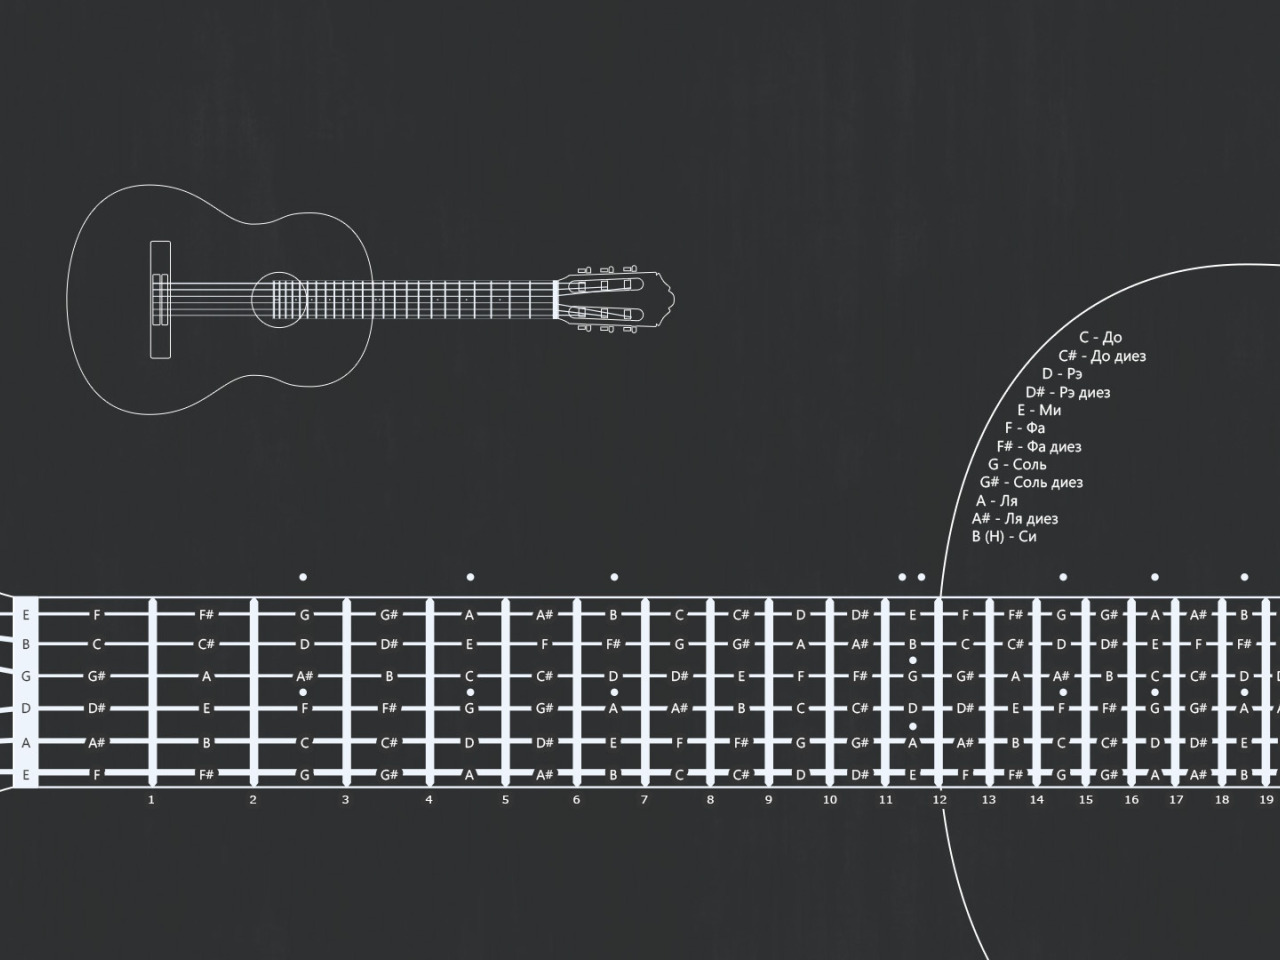 Гитара без нот. Схема нот на грифе гитары. Ноты на грифе электрогитары 6 струн.